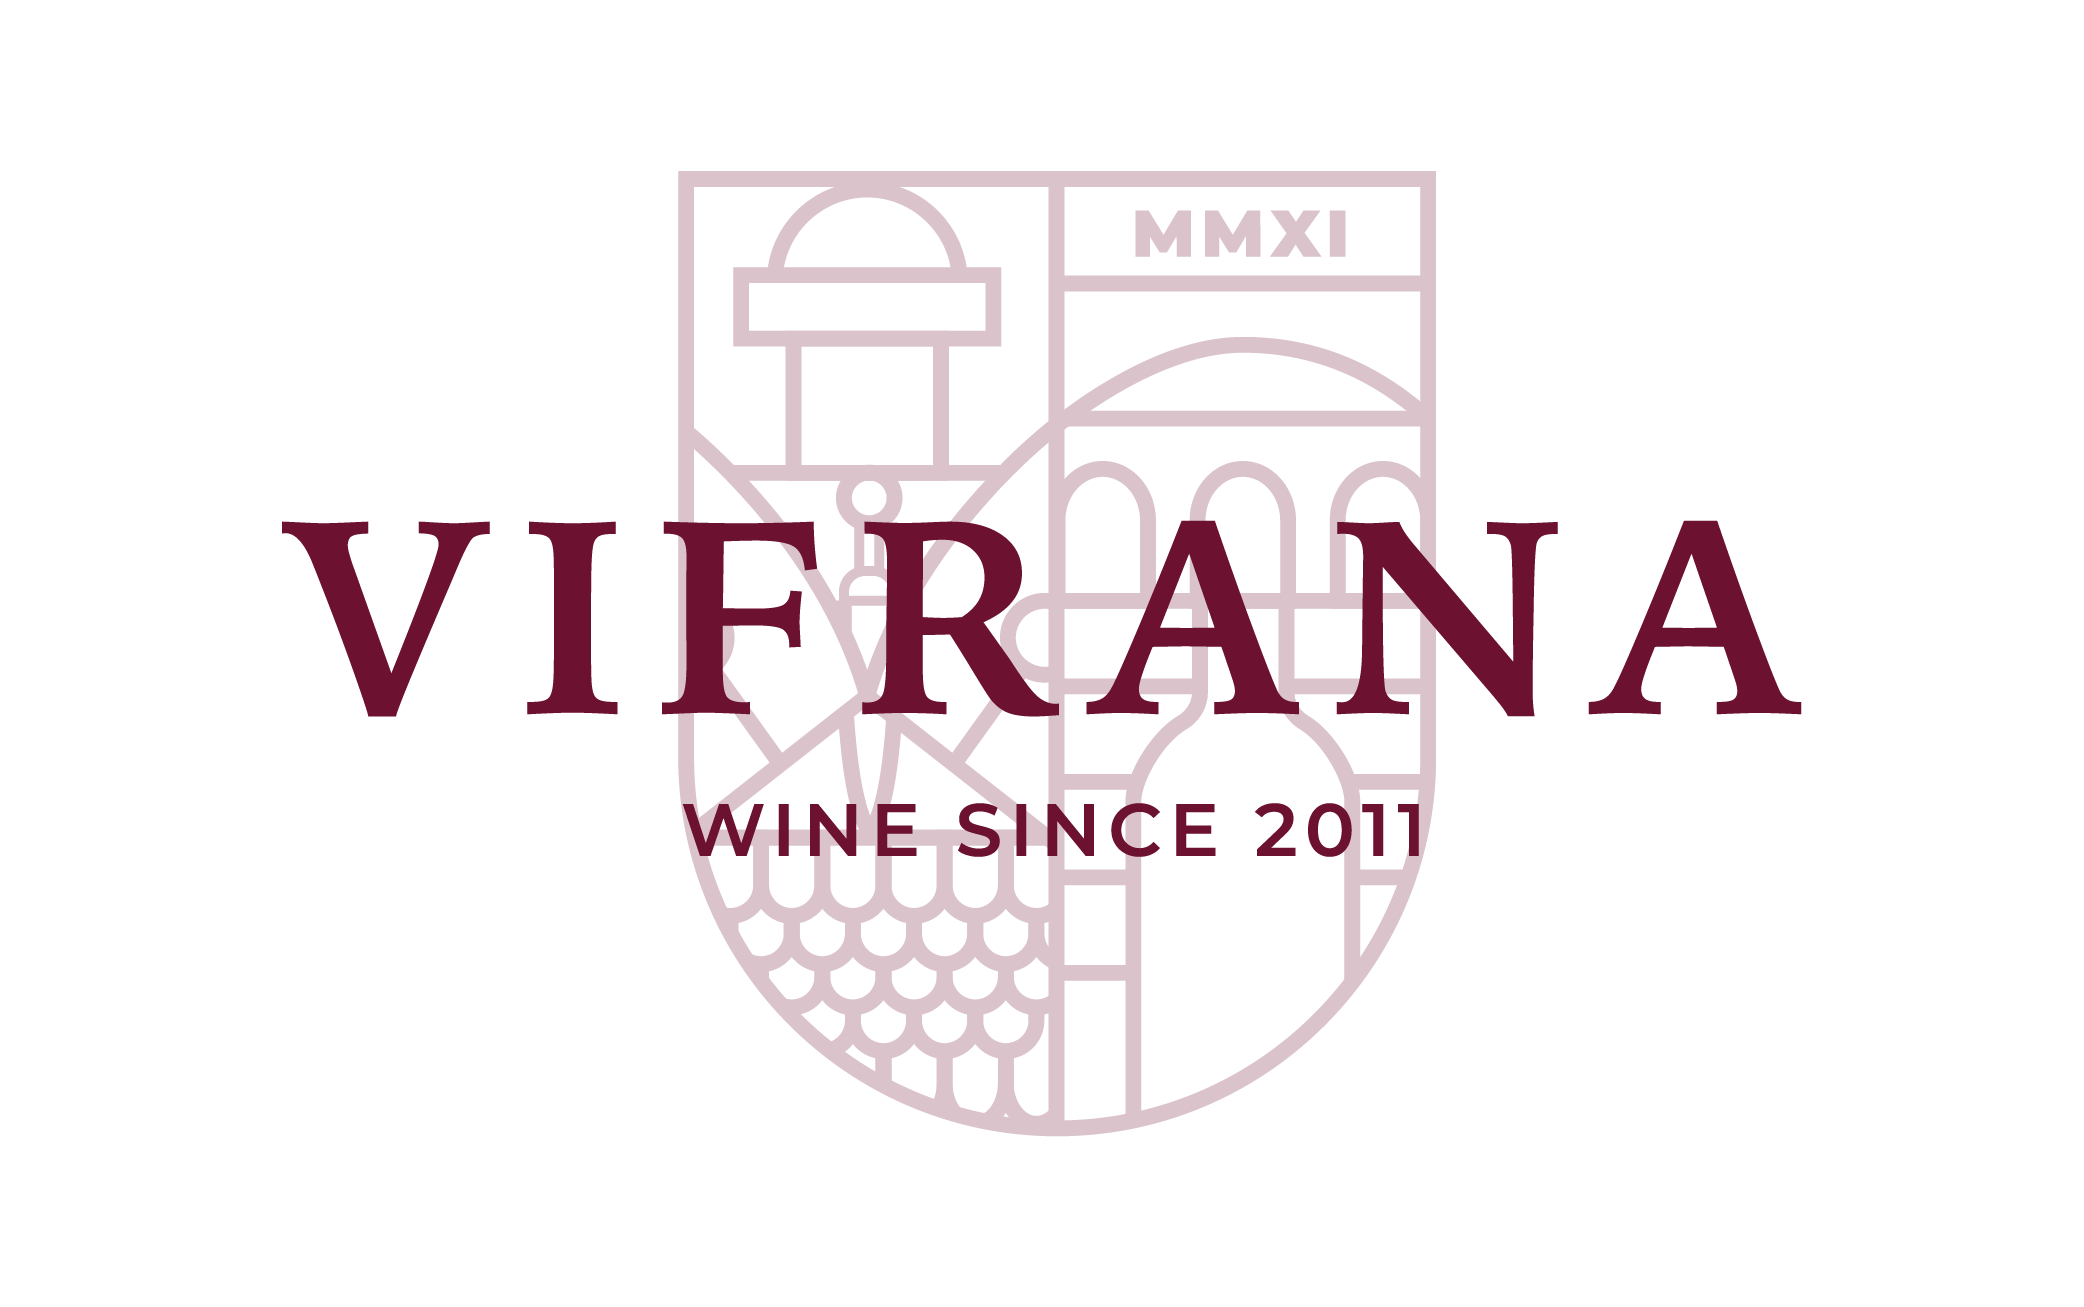 Vifrana- Producător de vin ecologic